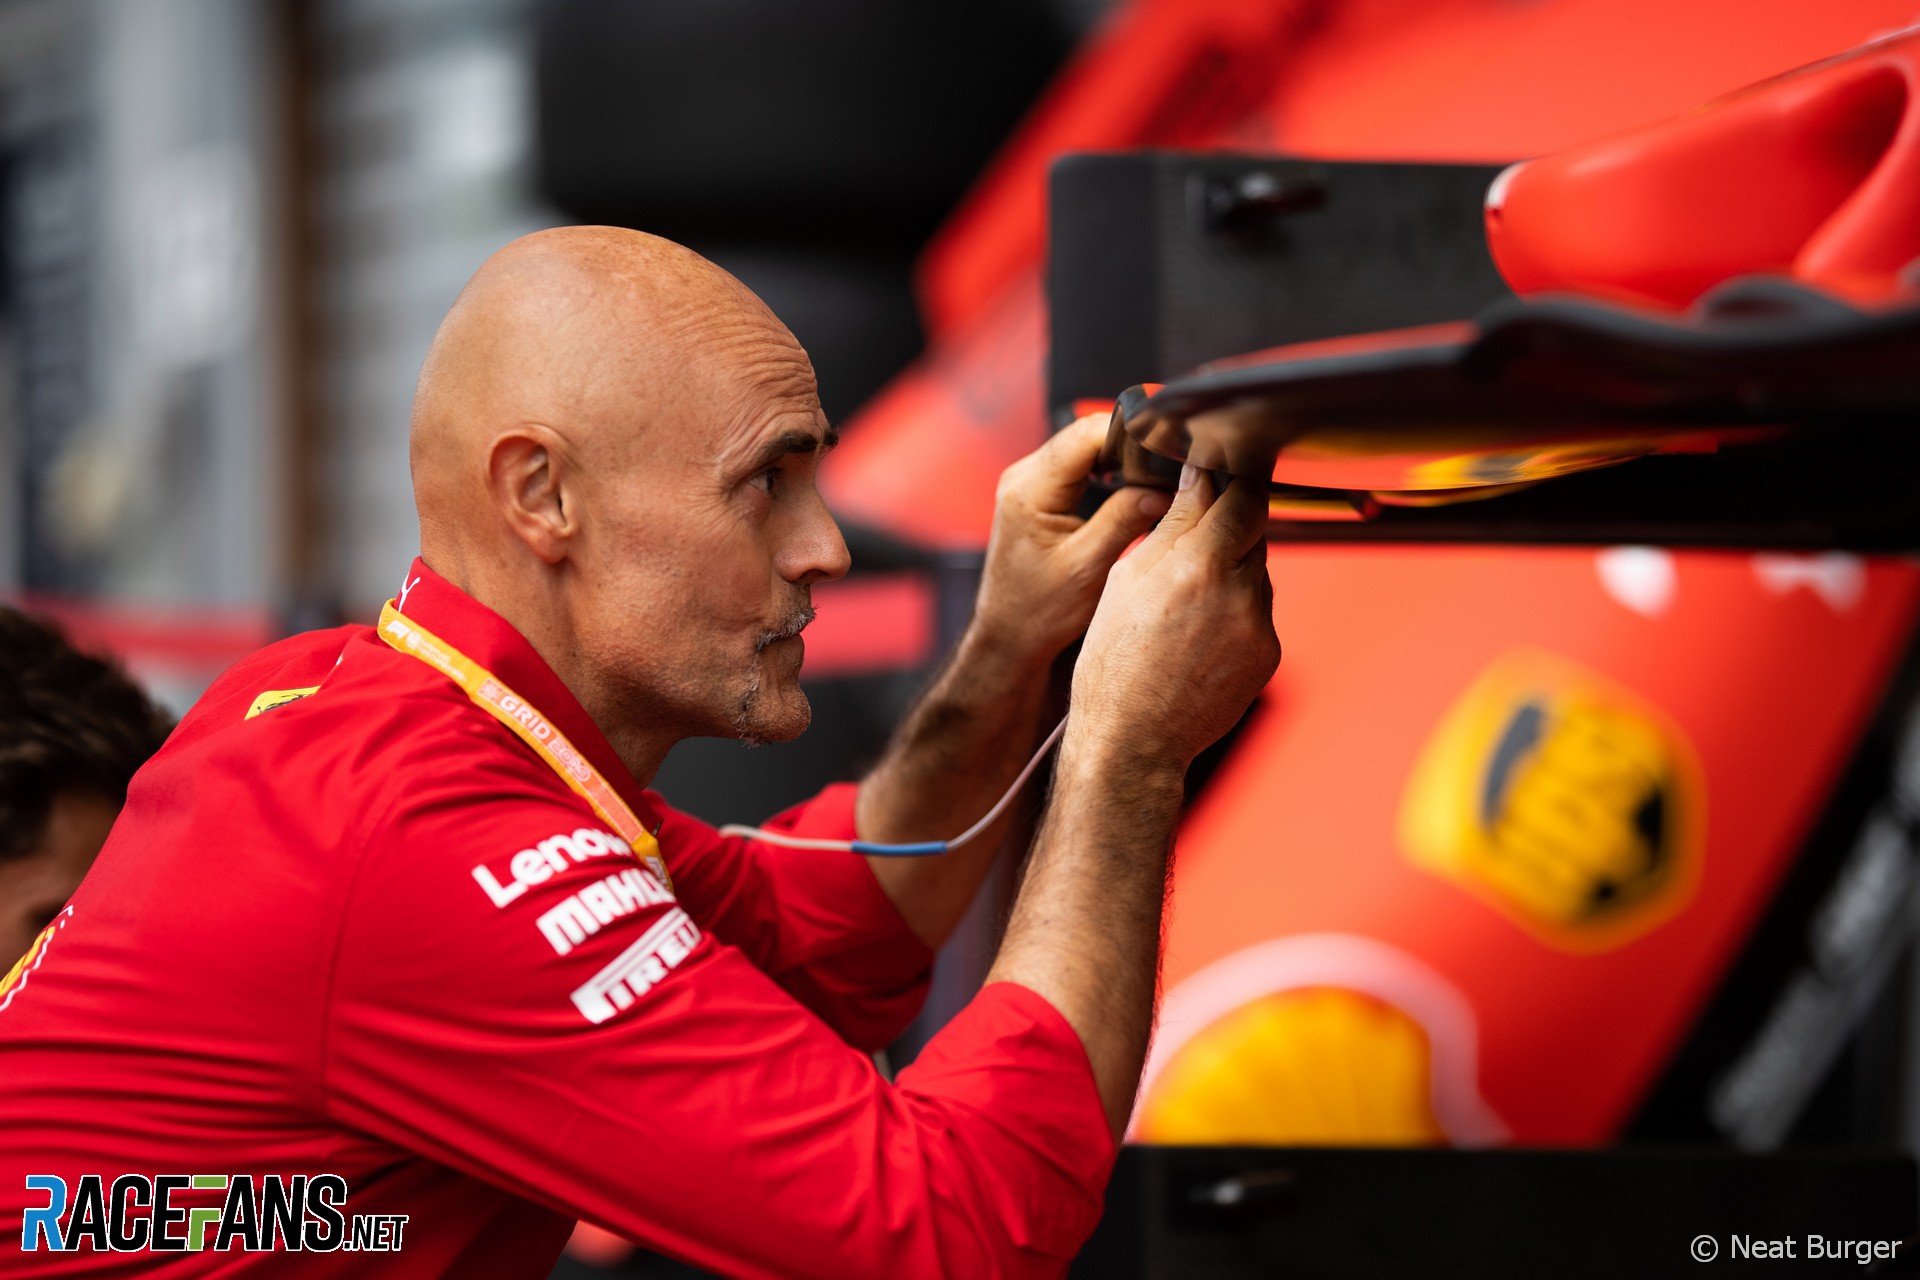 Ferrari, Spa-Francorchamps, 2019